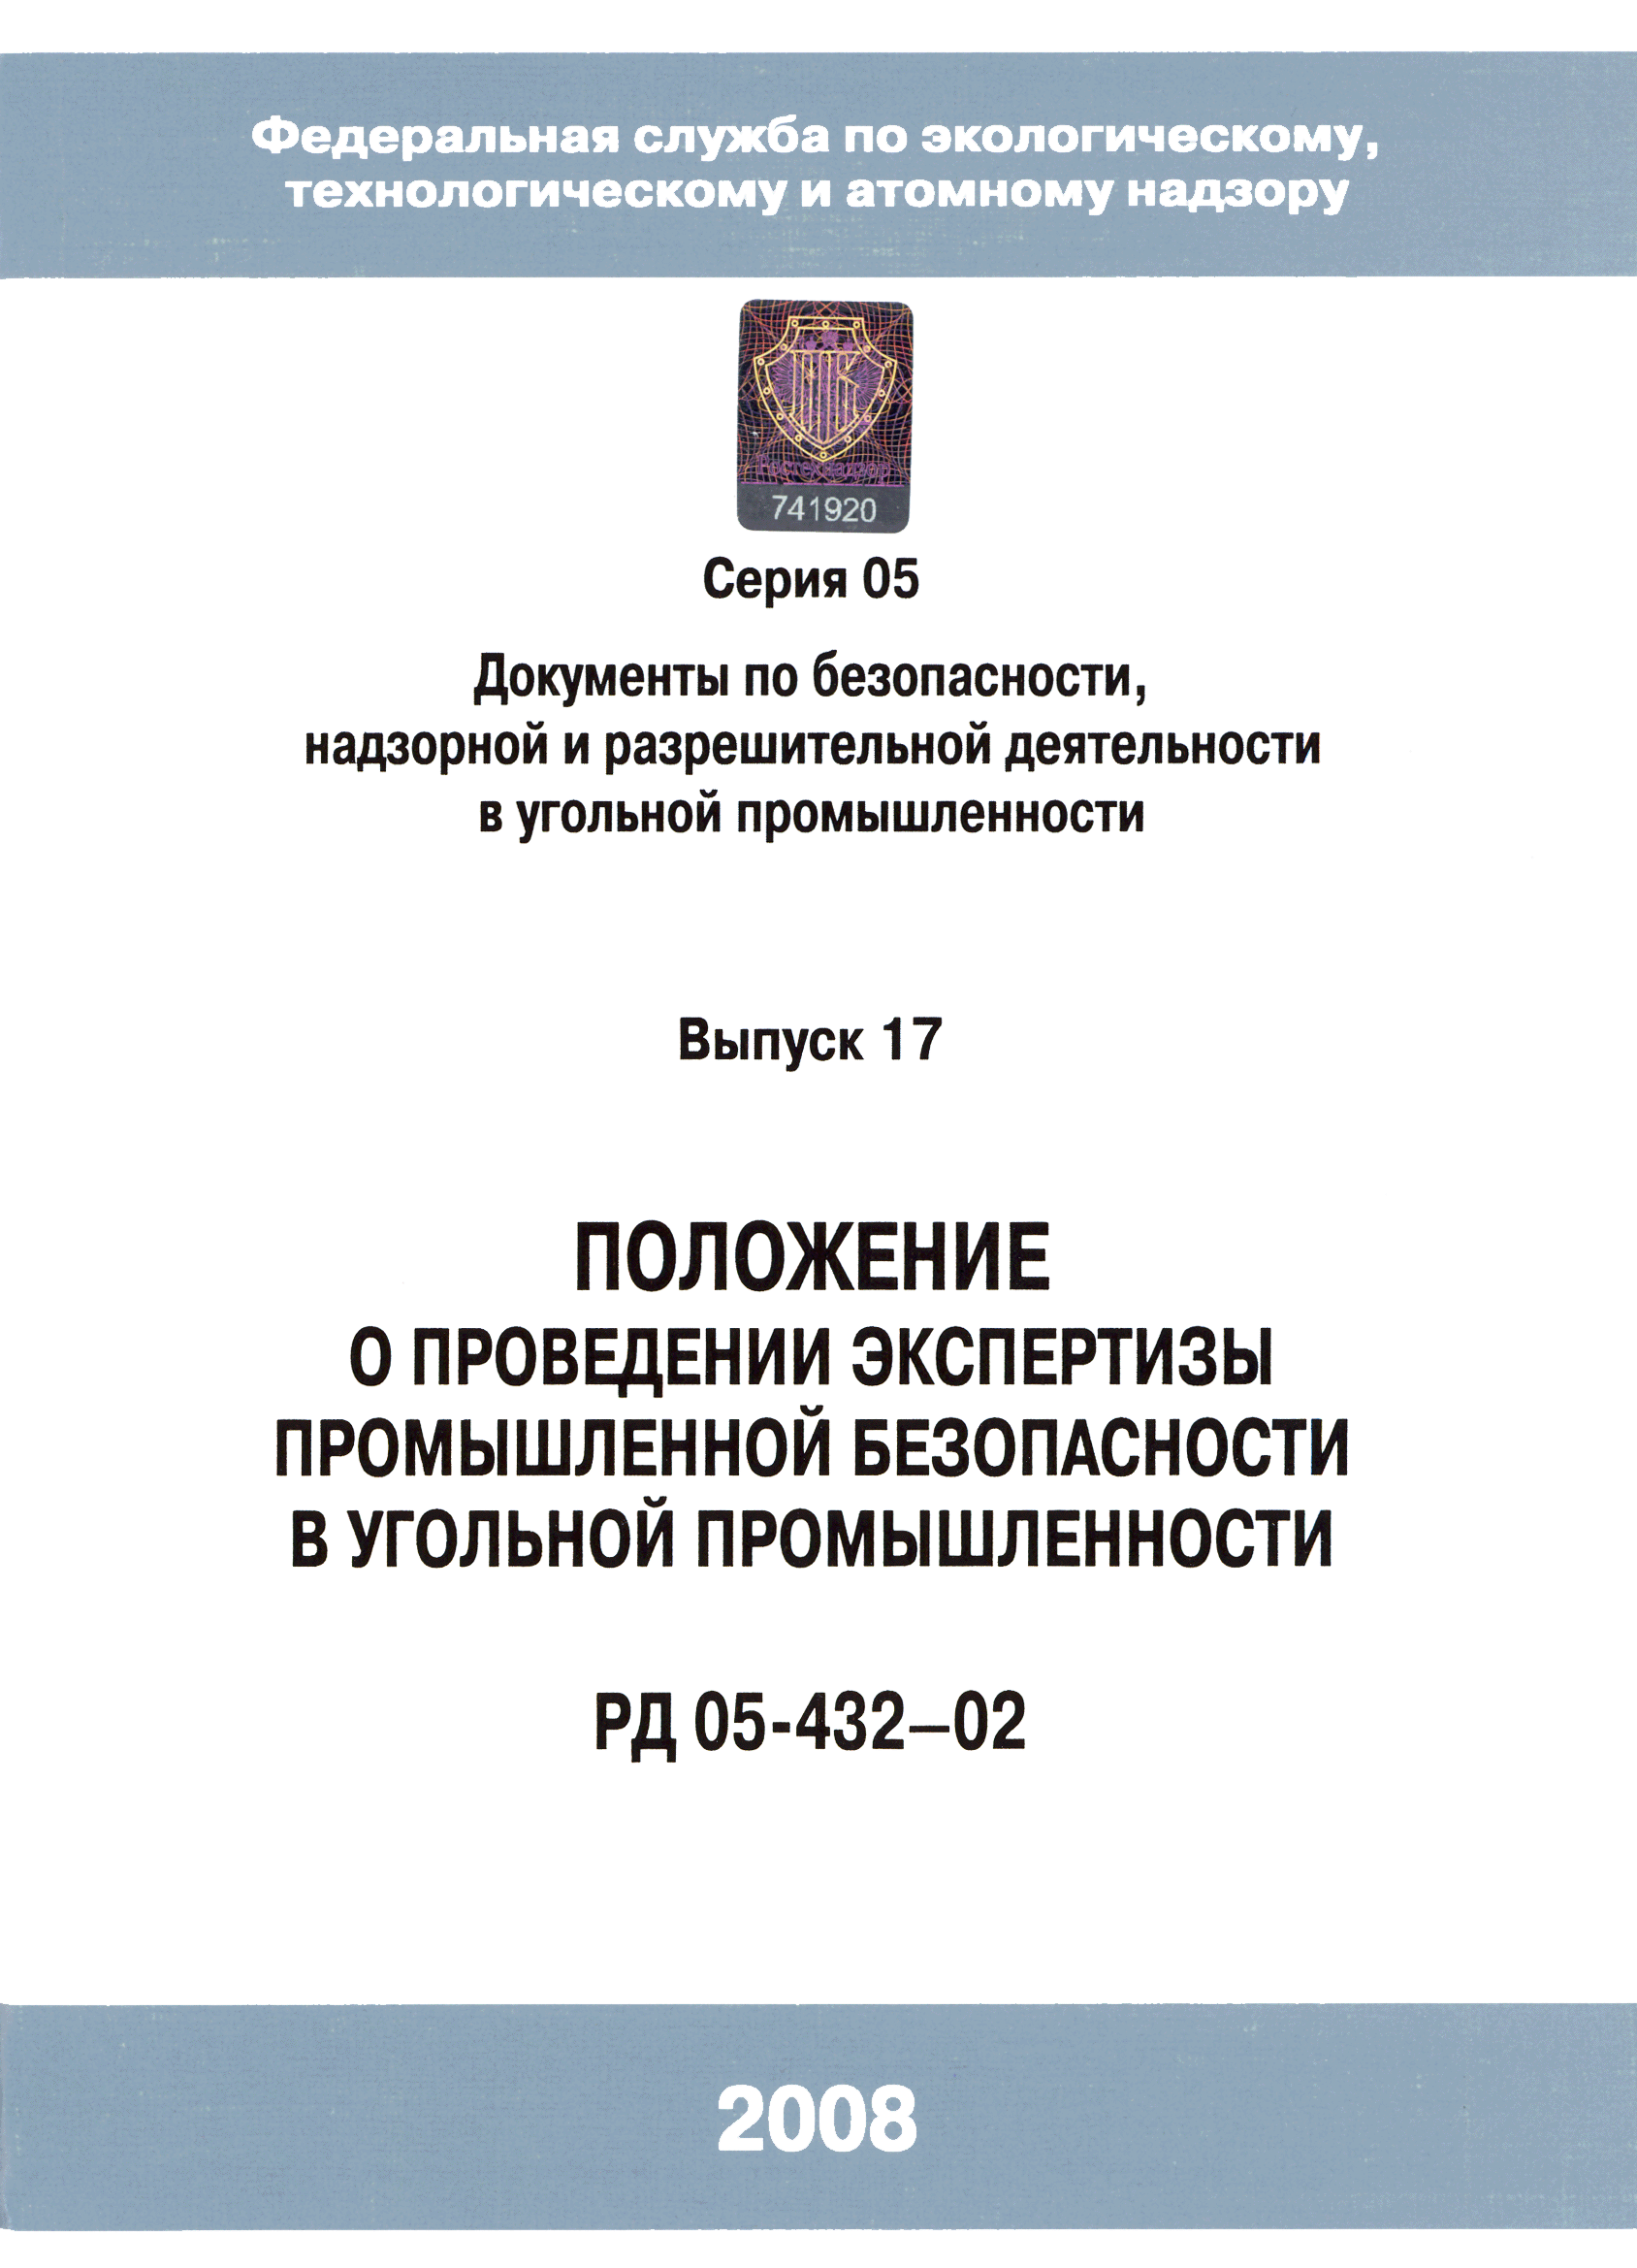 РД 05-432-02